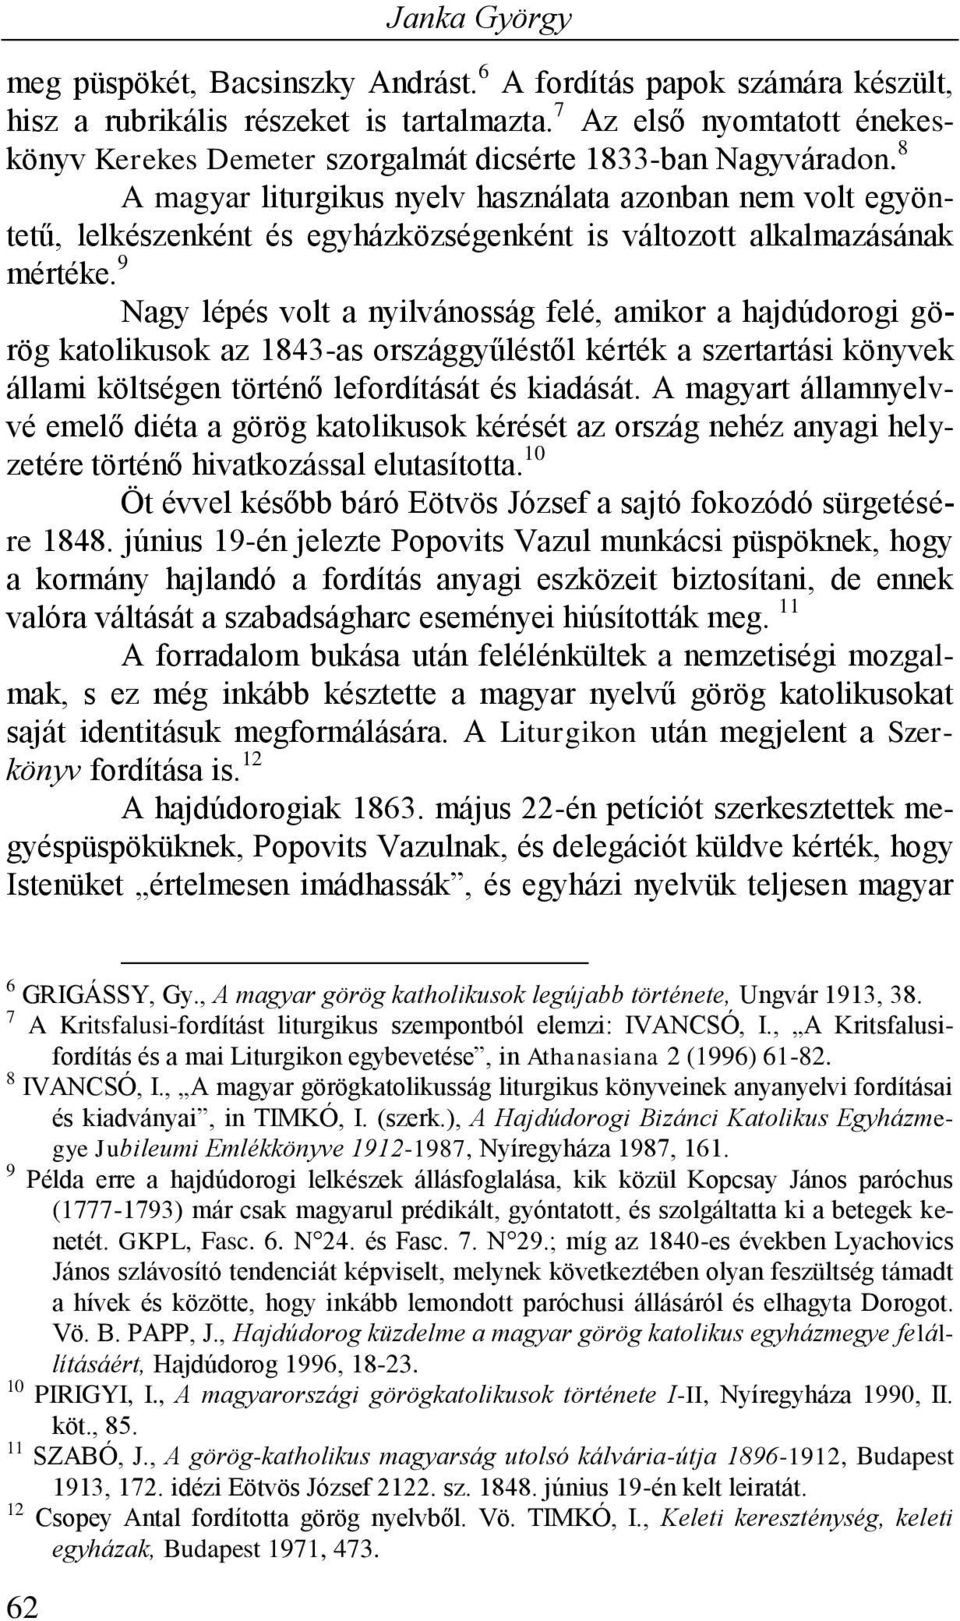 8 A magyar liturgikus nyelv használata azonban nem volt egyöntetű, lelkészenként és egyházközségenként is változott alkalmazásának mértéke.